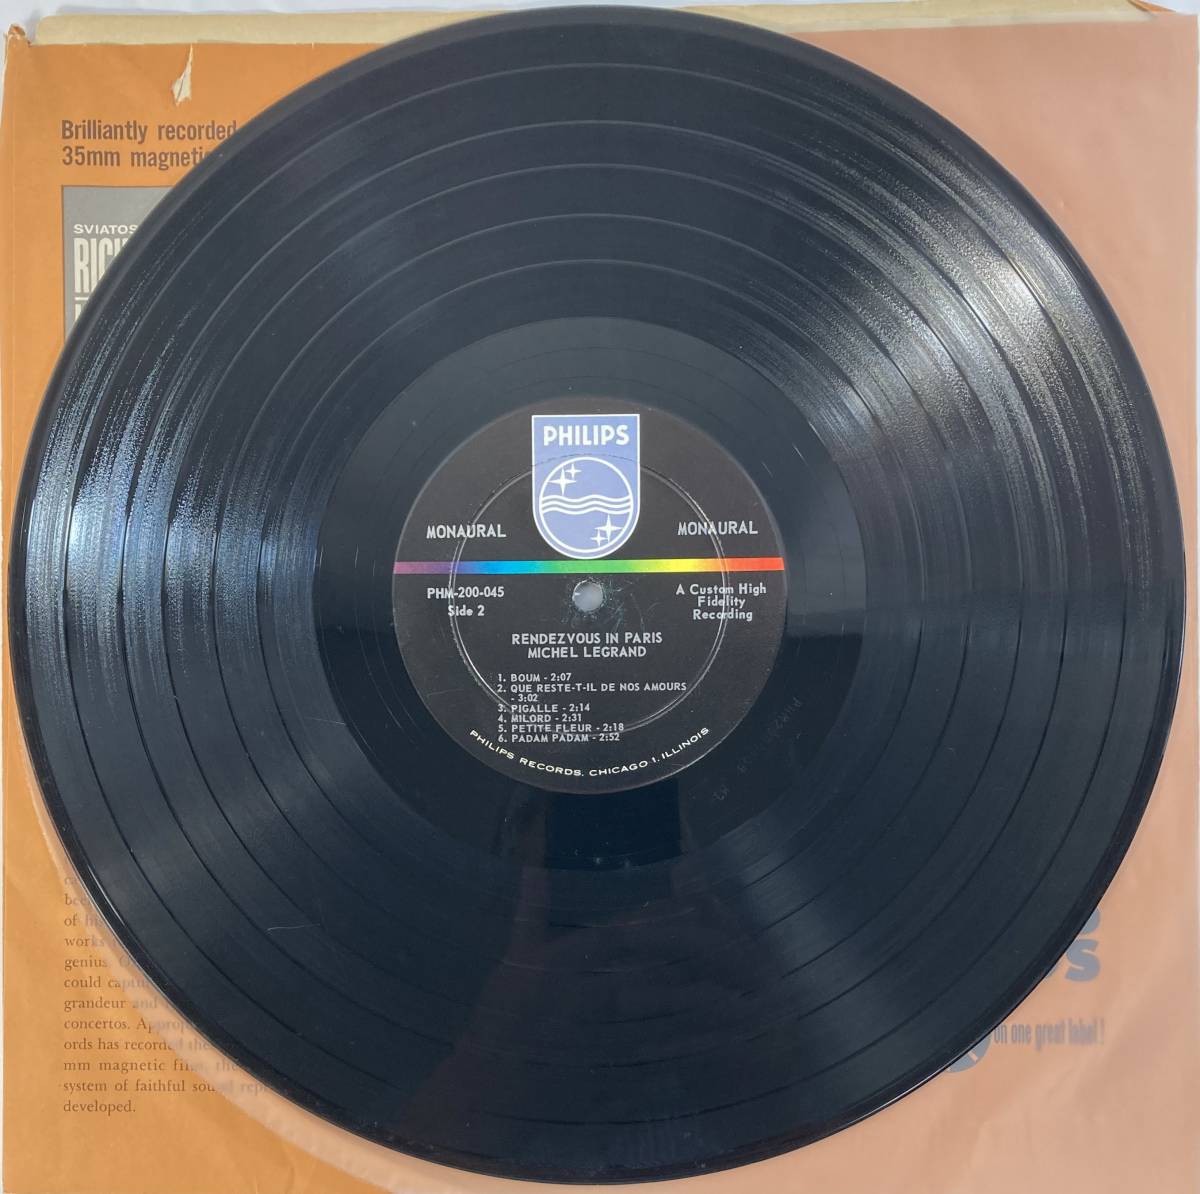  Michel * legrand (Michel Legrand) / rendevouz in paris American record LP Philips PHM 200-045 MONO